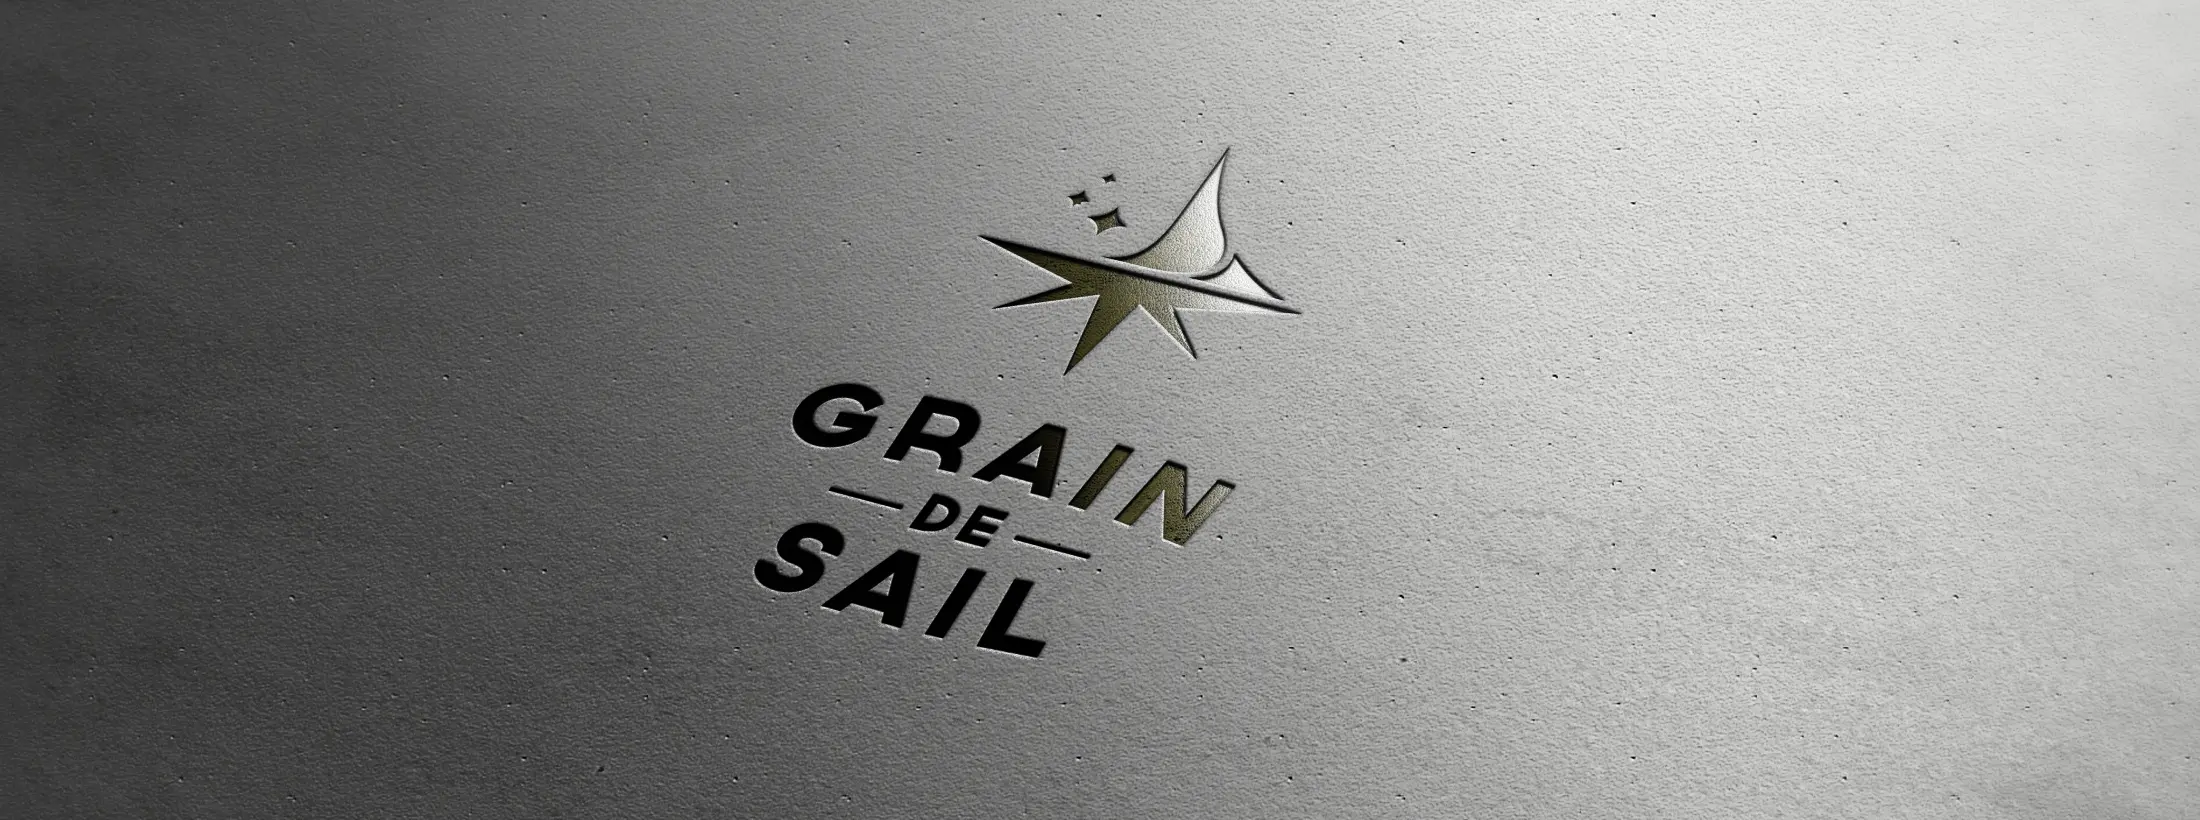 logo grain de sail branding design phone identite visuelle osb communication